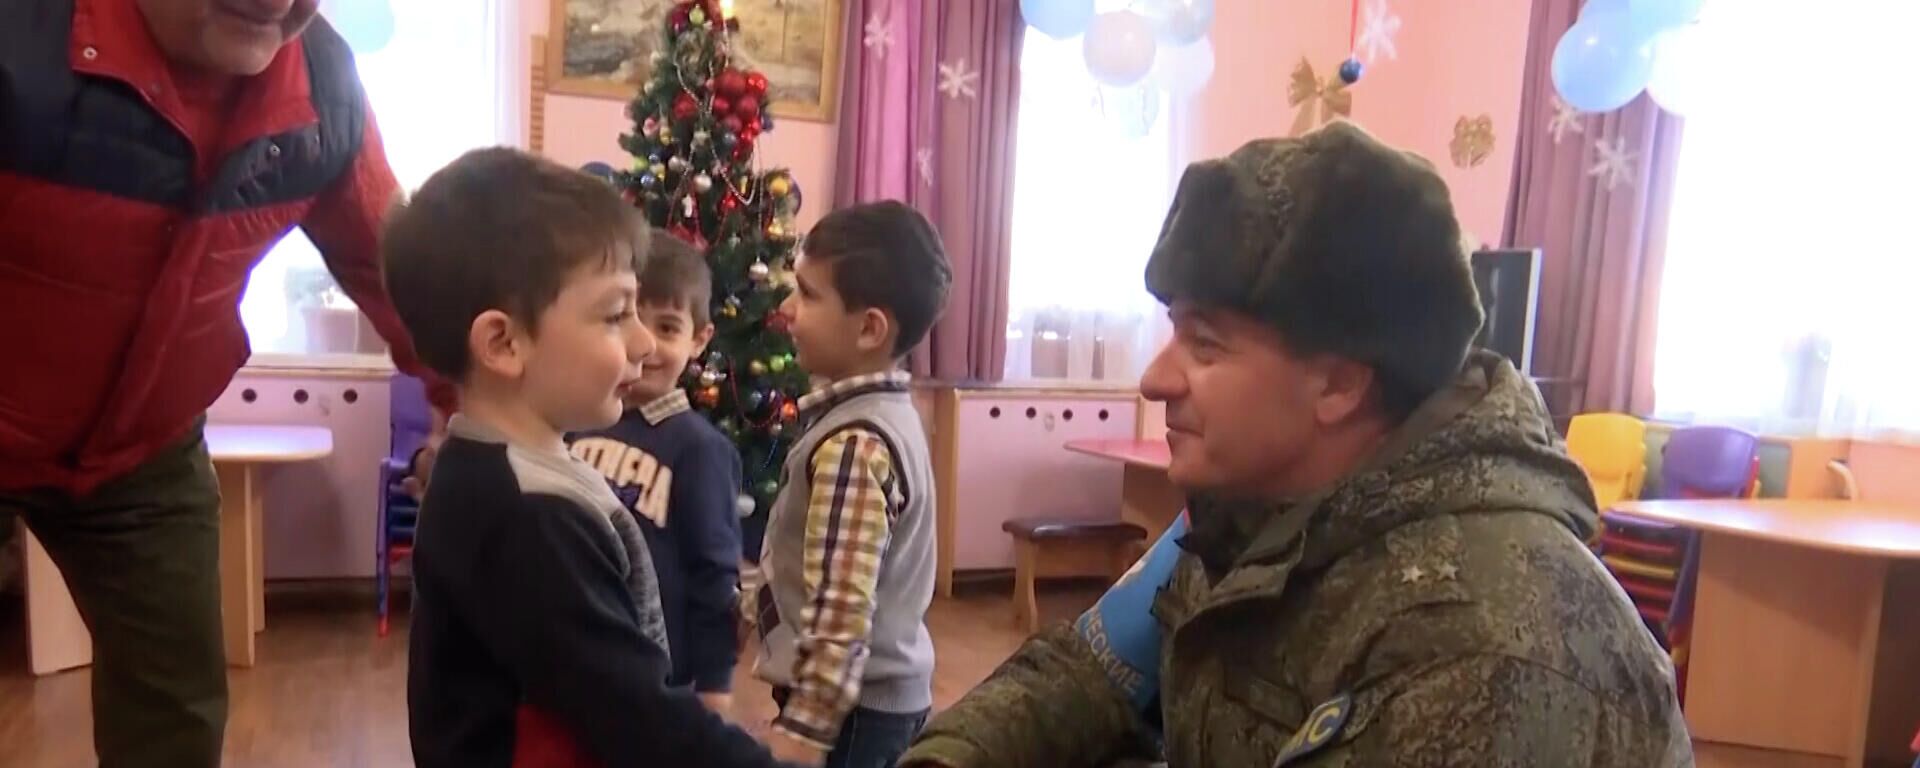 Ռուս խաղաղապահները Արցախի մանկական վերականգնողական կենտրոնի 50 երեխայի նվերներ են տվել - Sputnik Արմենիա, 1920, 03.01.2022